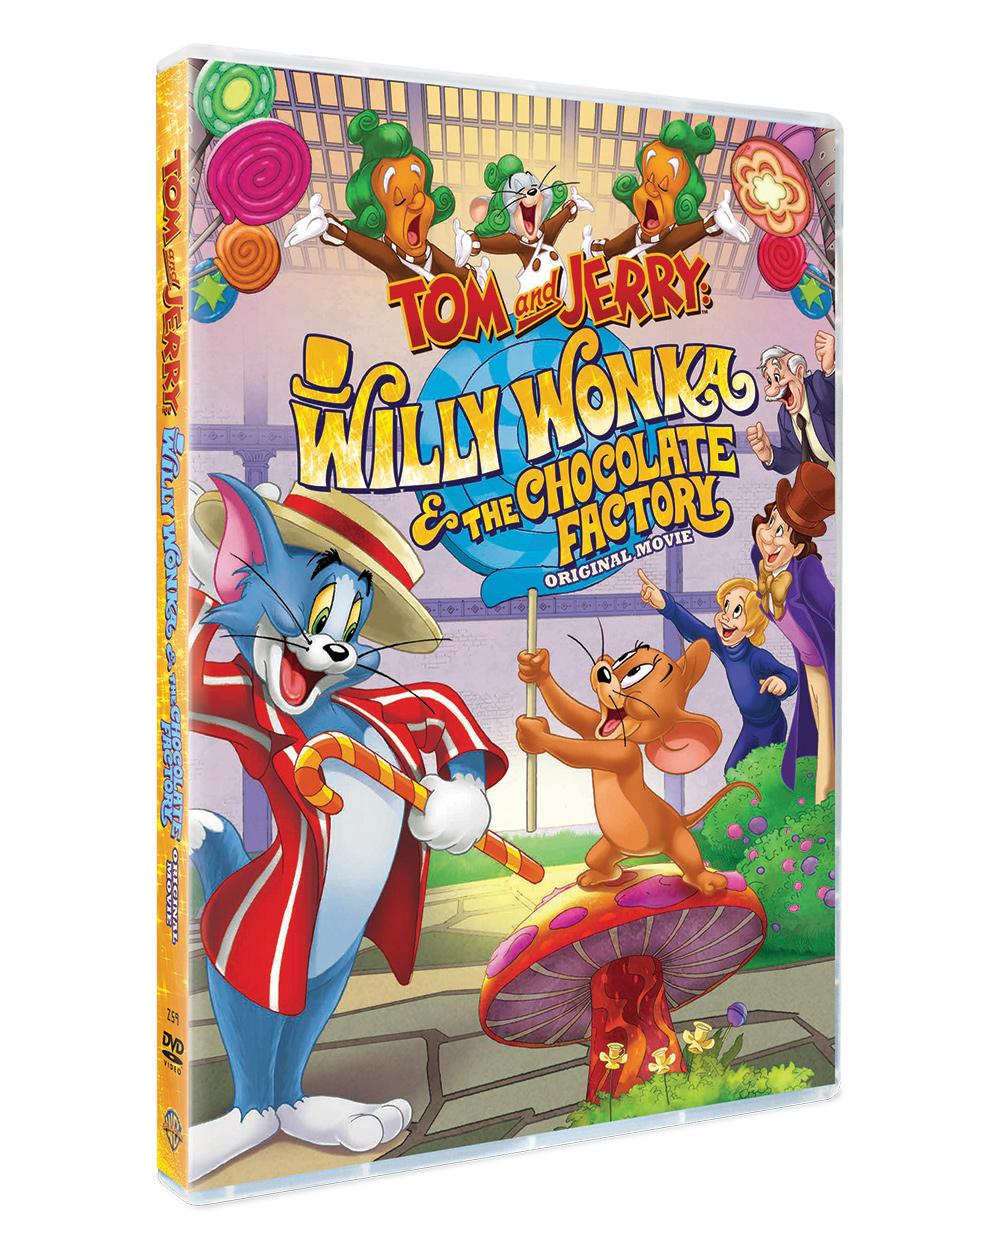 ทอมกับเจอร์รี่ ตอน ผจญภัยโรงงานช็อกโกแลต (ดีวีดี 2 ภาษา (อังกฤษ/ไทย)) / Tom & Jerry : Willy Wonka and the Chocolate Factory DVD